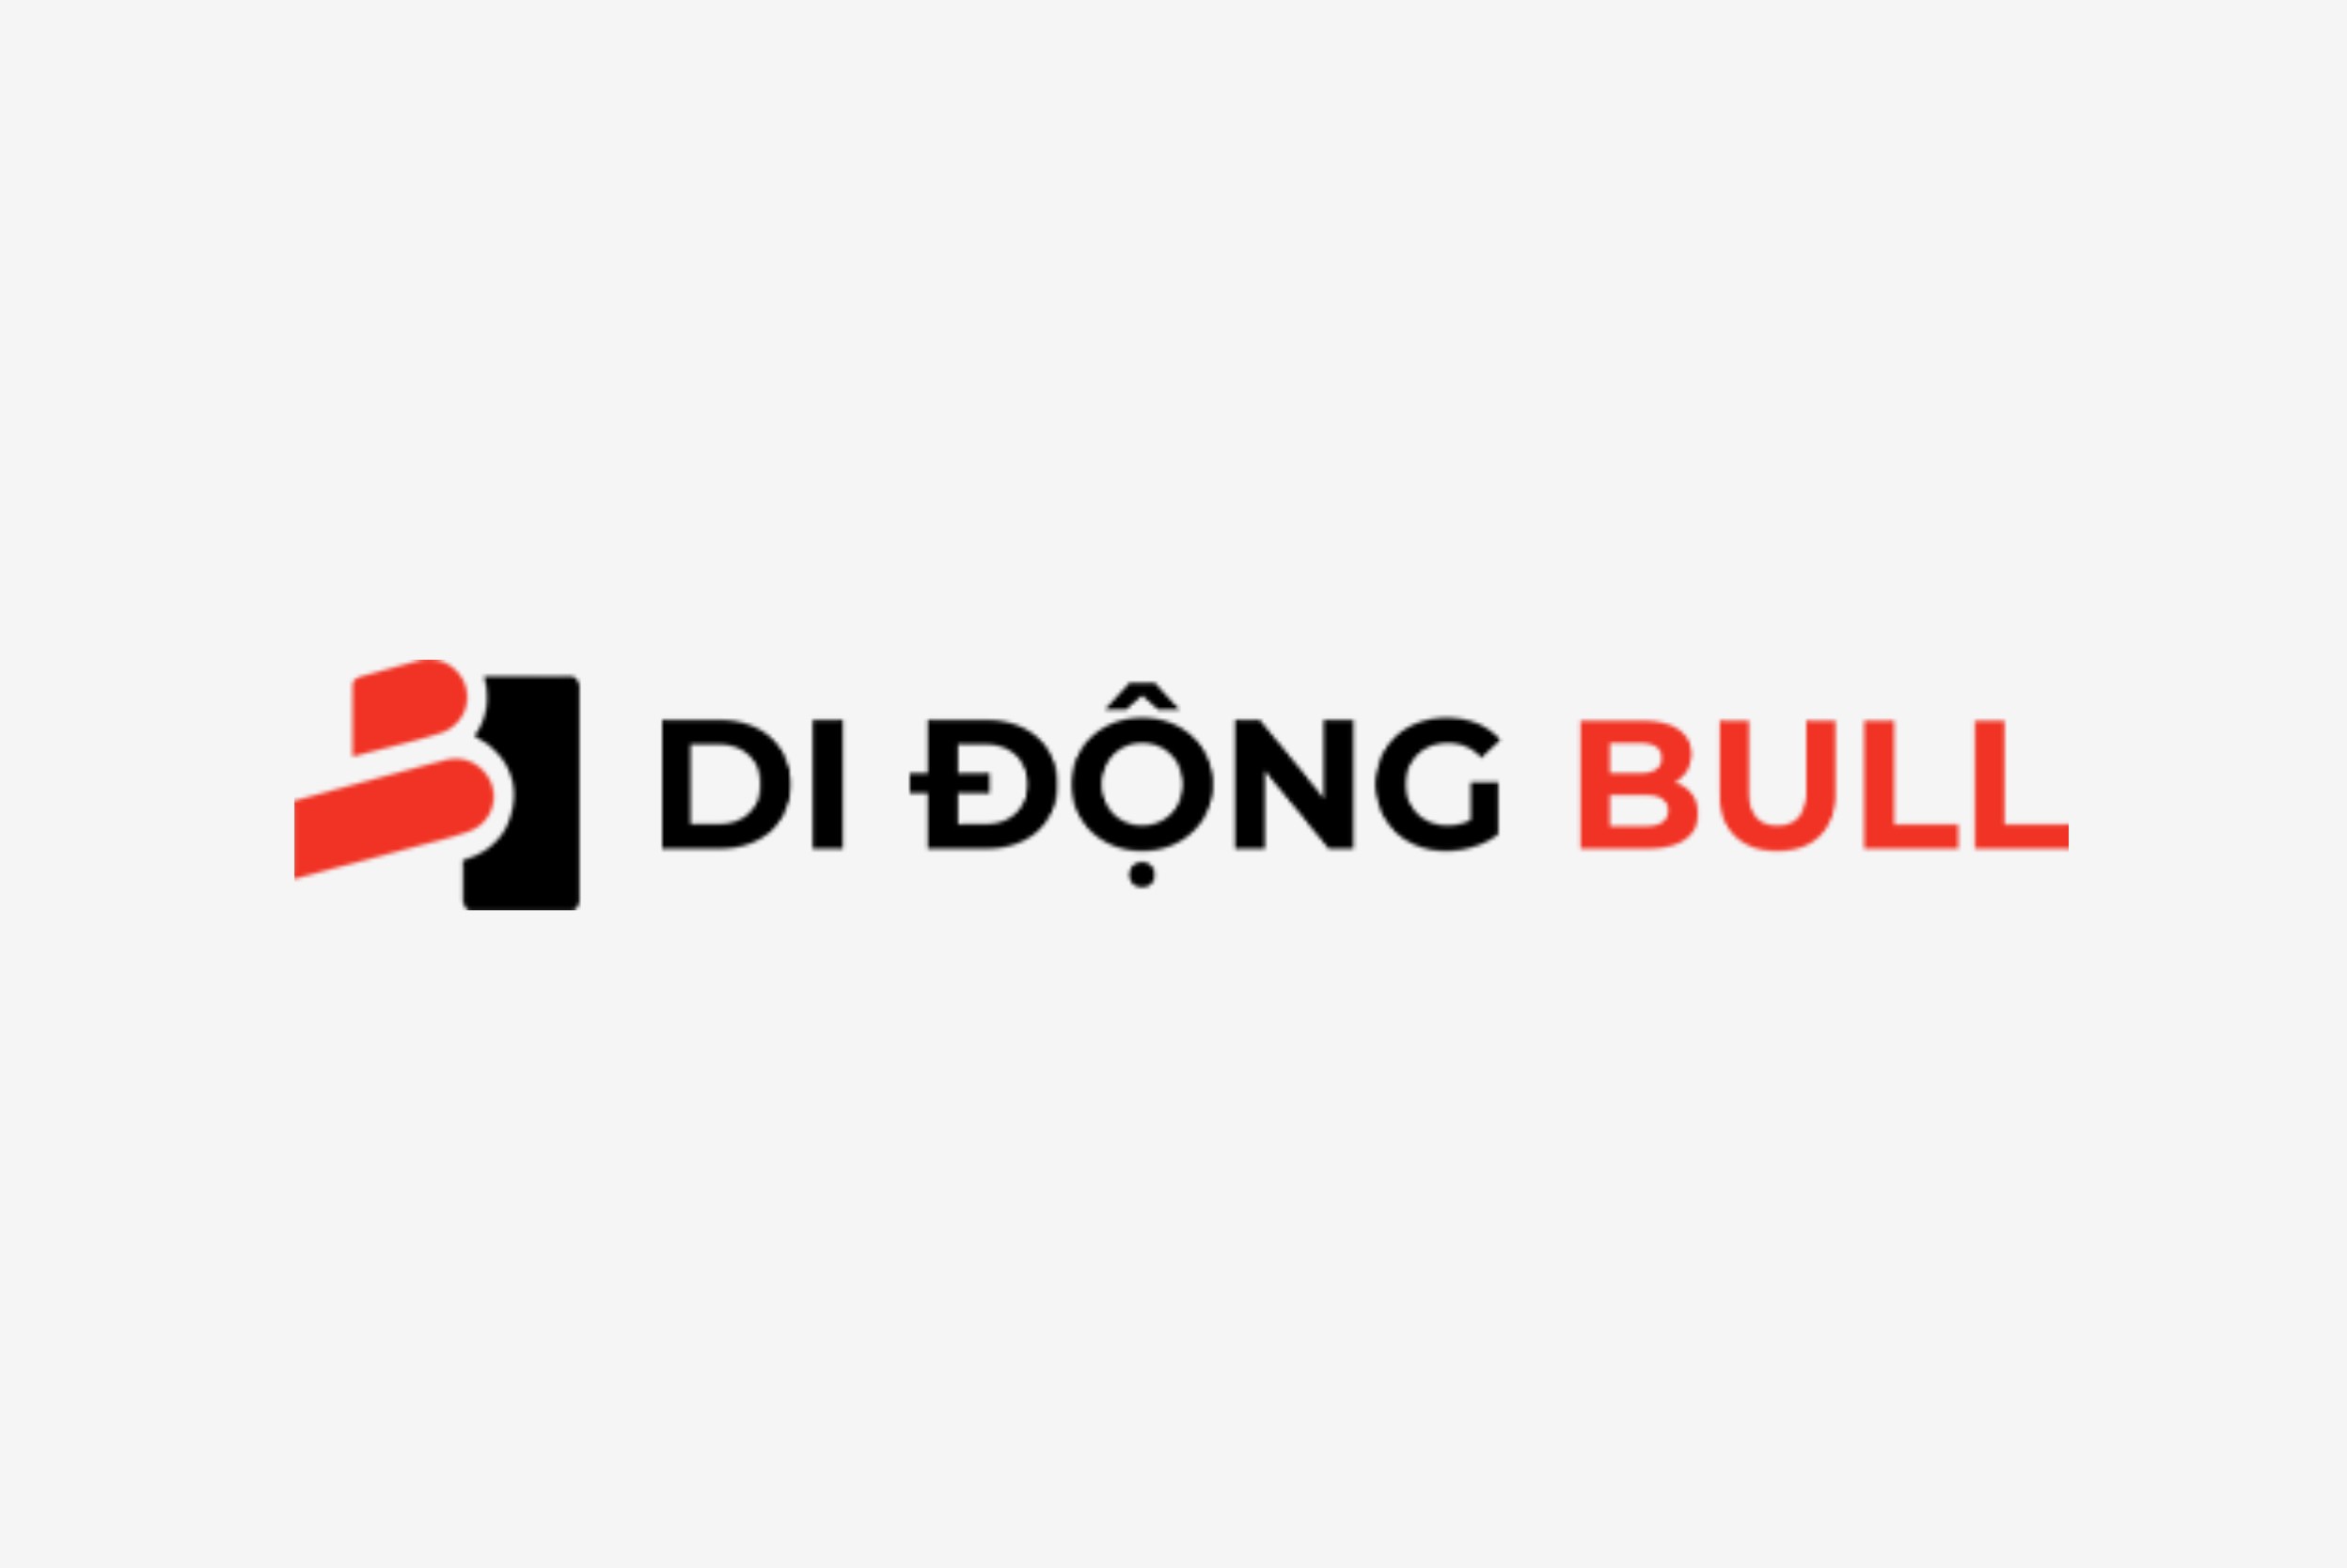 di-dong-bull-logo